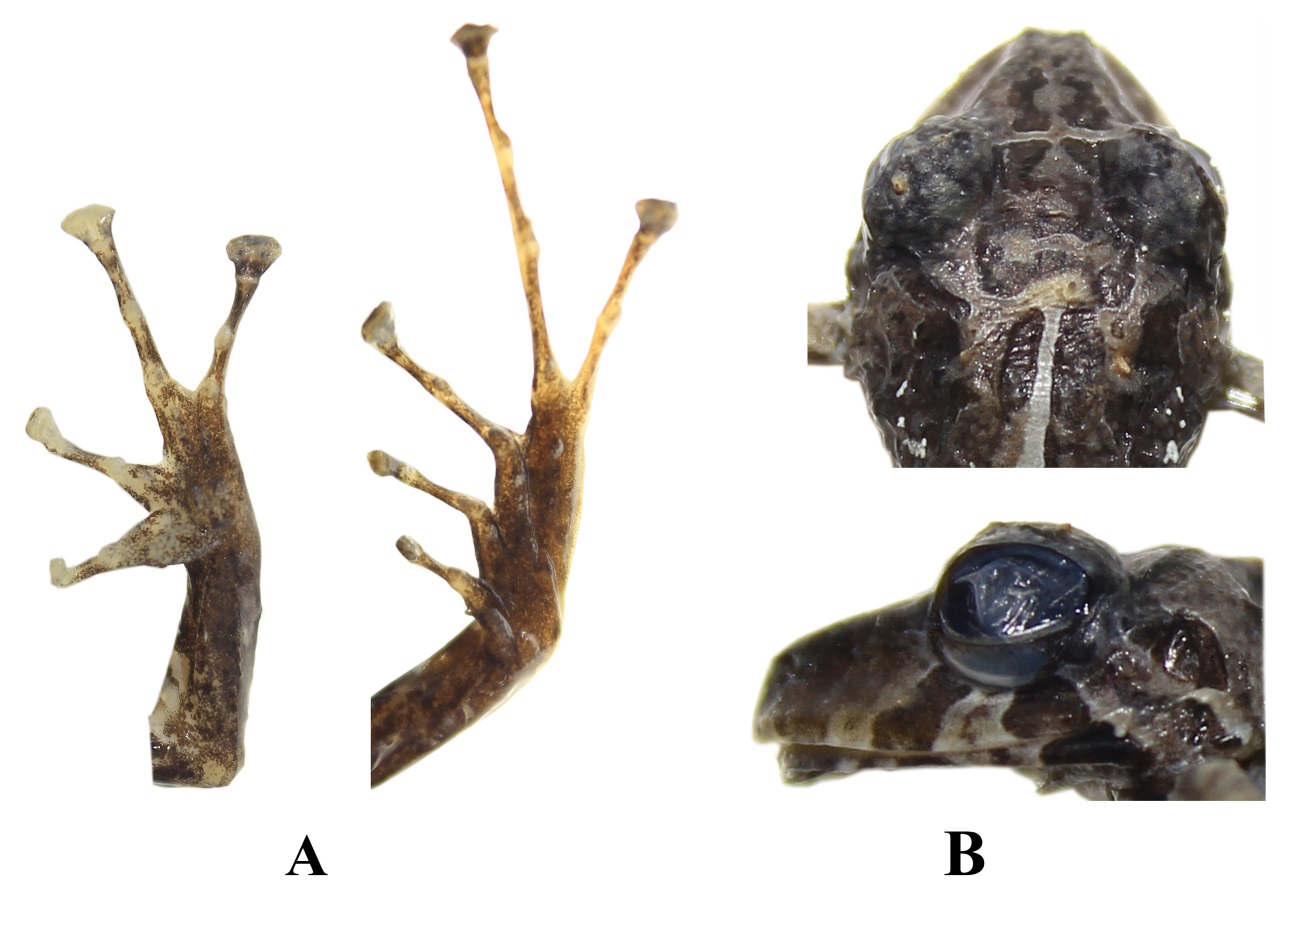 Pristimantis kuri sp. nov. DHMECN 11383, macho, holotipo. (A) Detalle de las extremidades; (B) Detalle de la cabeza en vista de
dorsal y de perfil. (CRP).